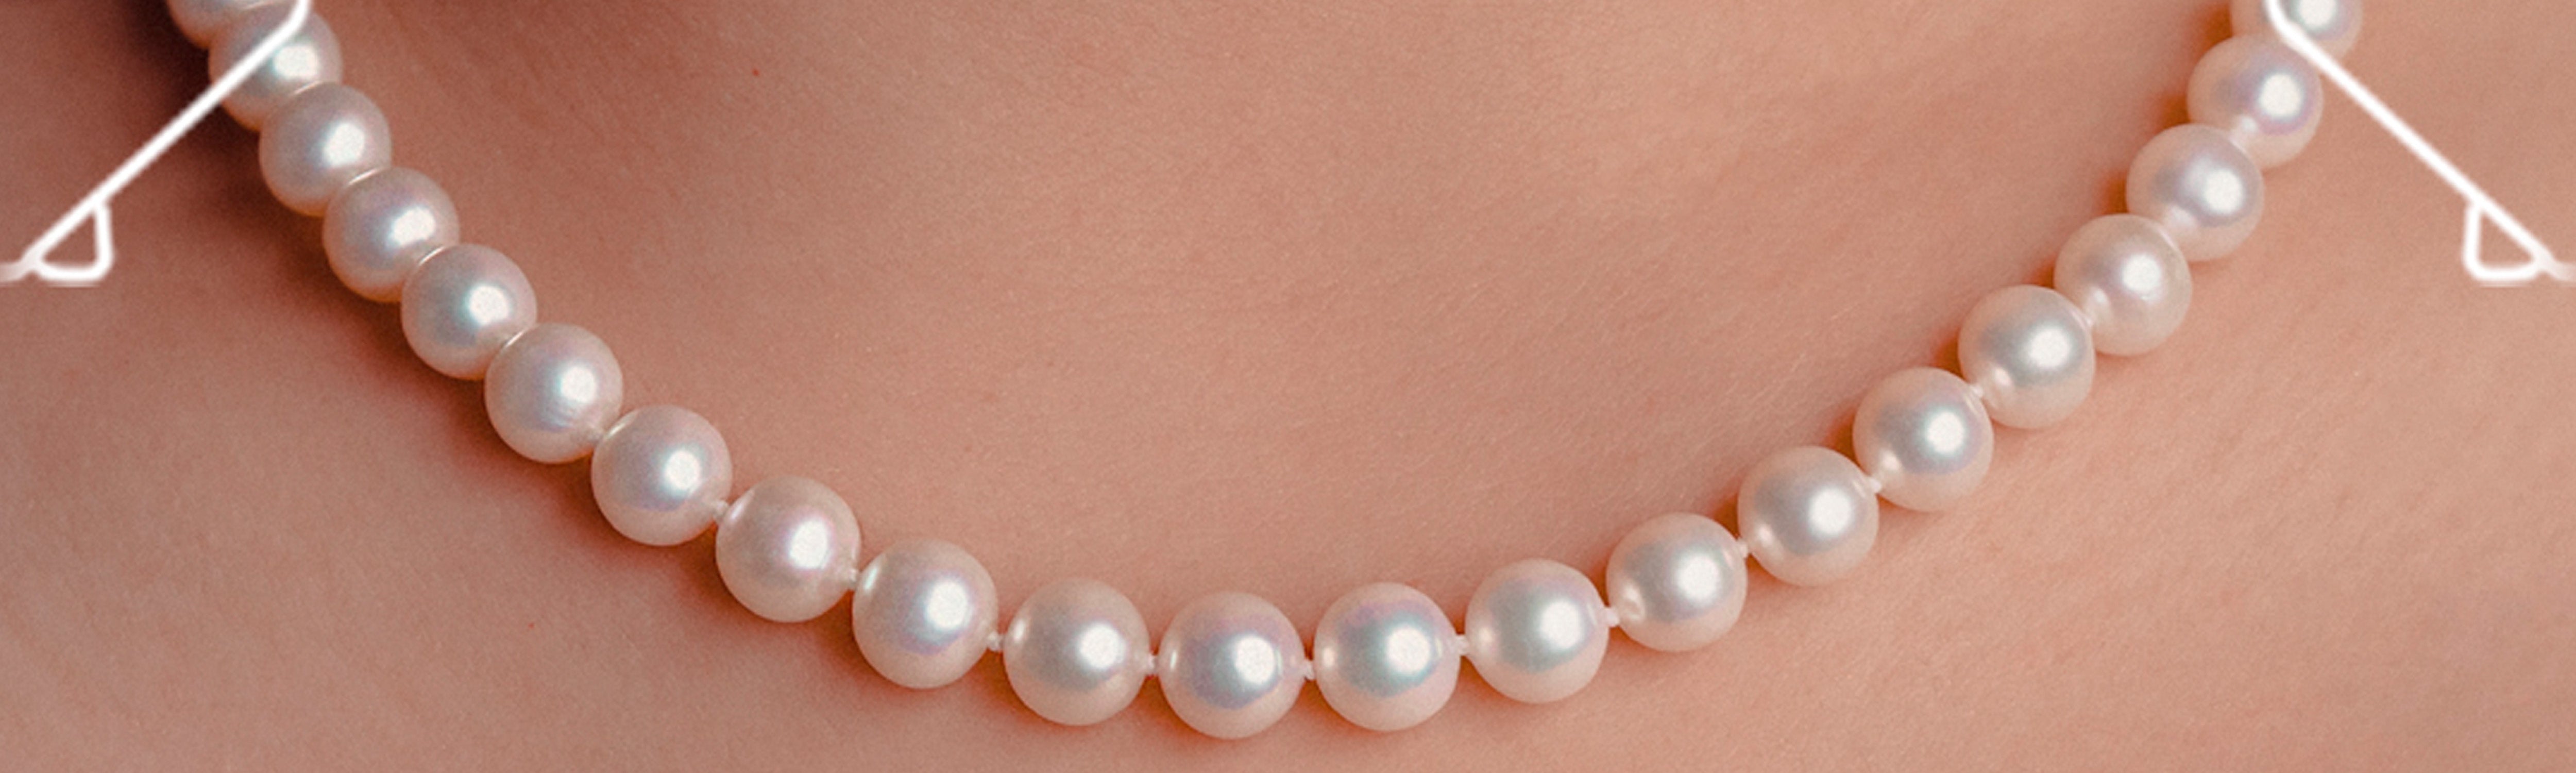 Cómo llevar bien las perlas, según las influyentes del momento